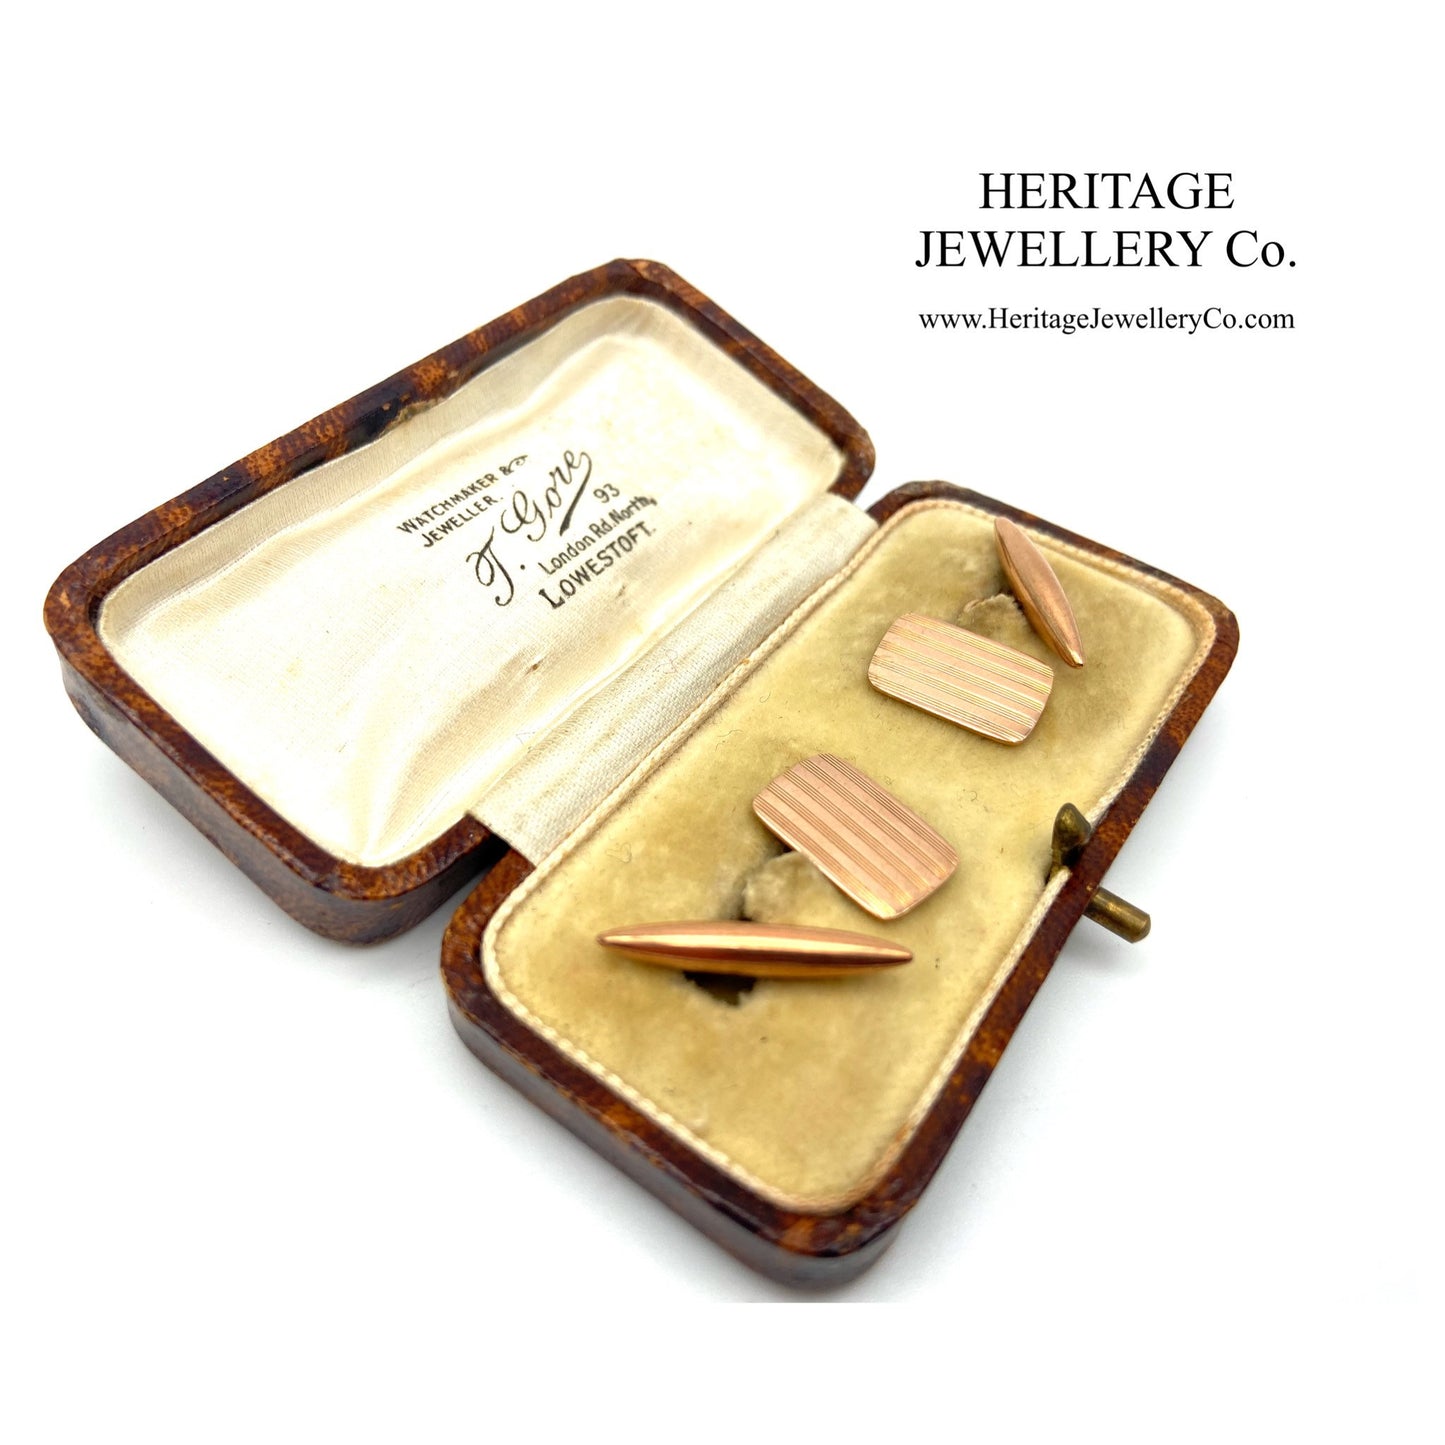 Georg Jensen Rose Gold Cufflinks with Antique Box (c. 1923)